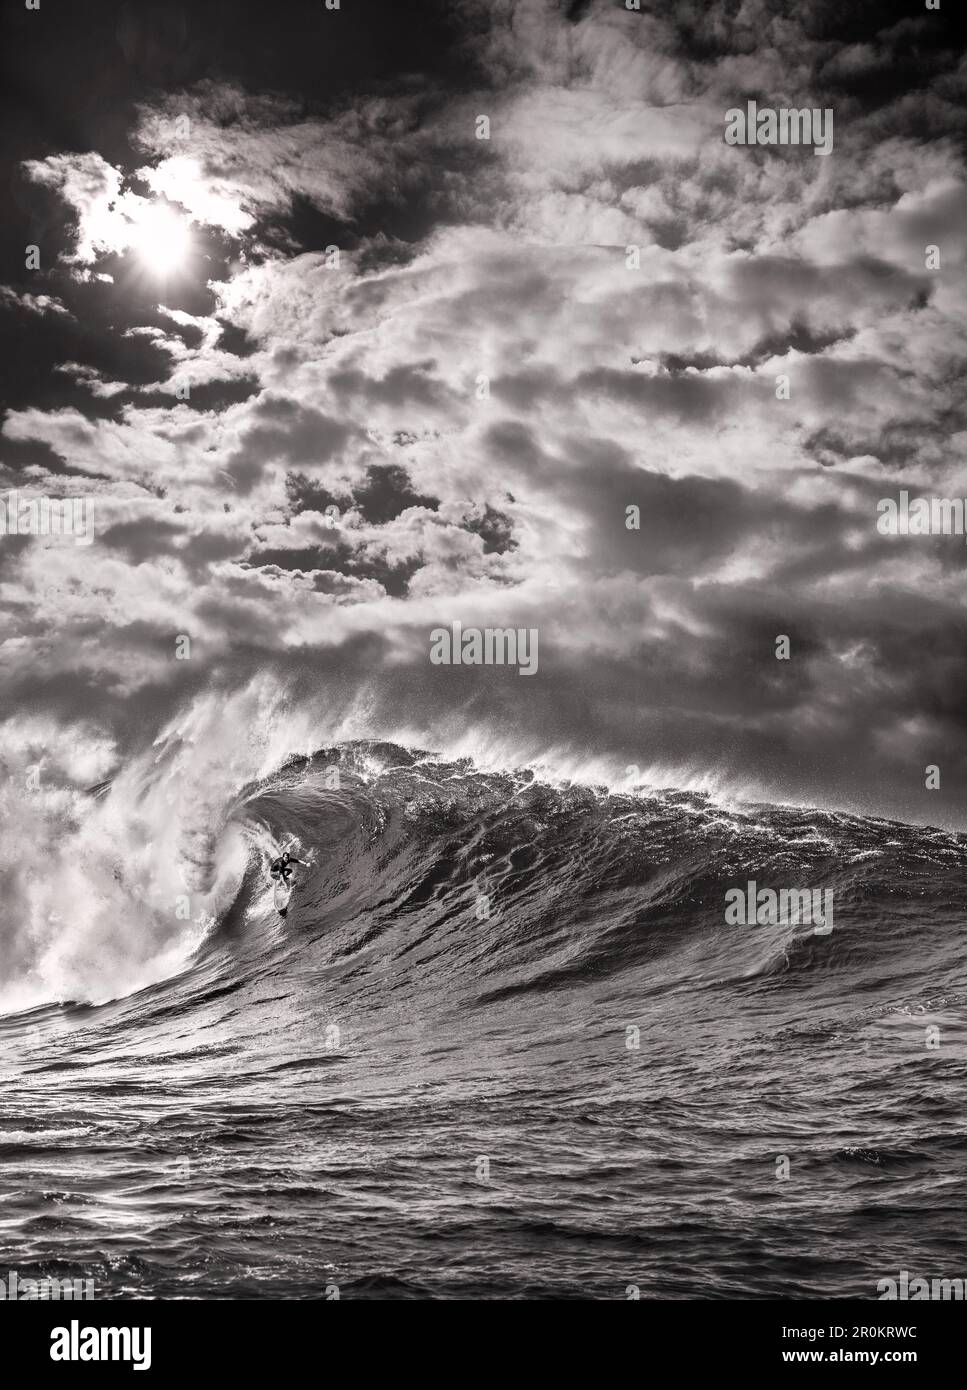 États-Unis, Hawaï, Maui, le surfeur Mike Pietsch surfe une vague géante à Jaws, Peahi sur la rive nord de Maui Banque D'Images